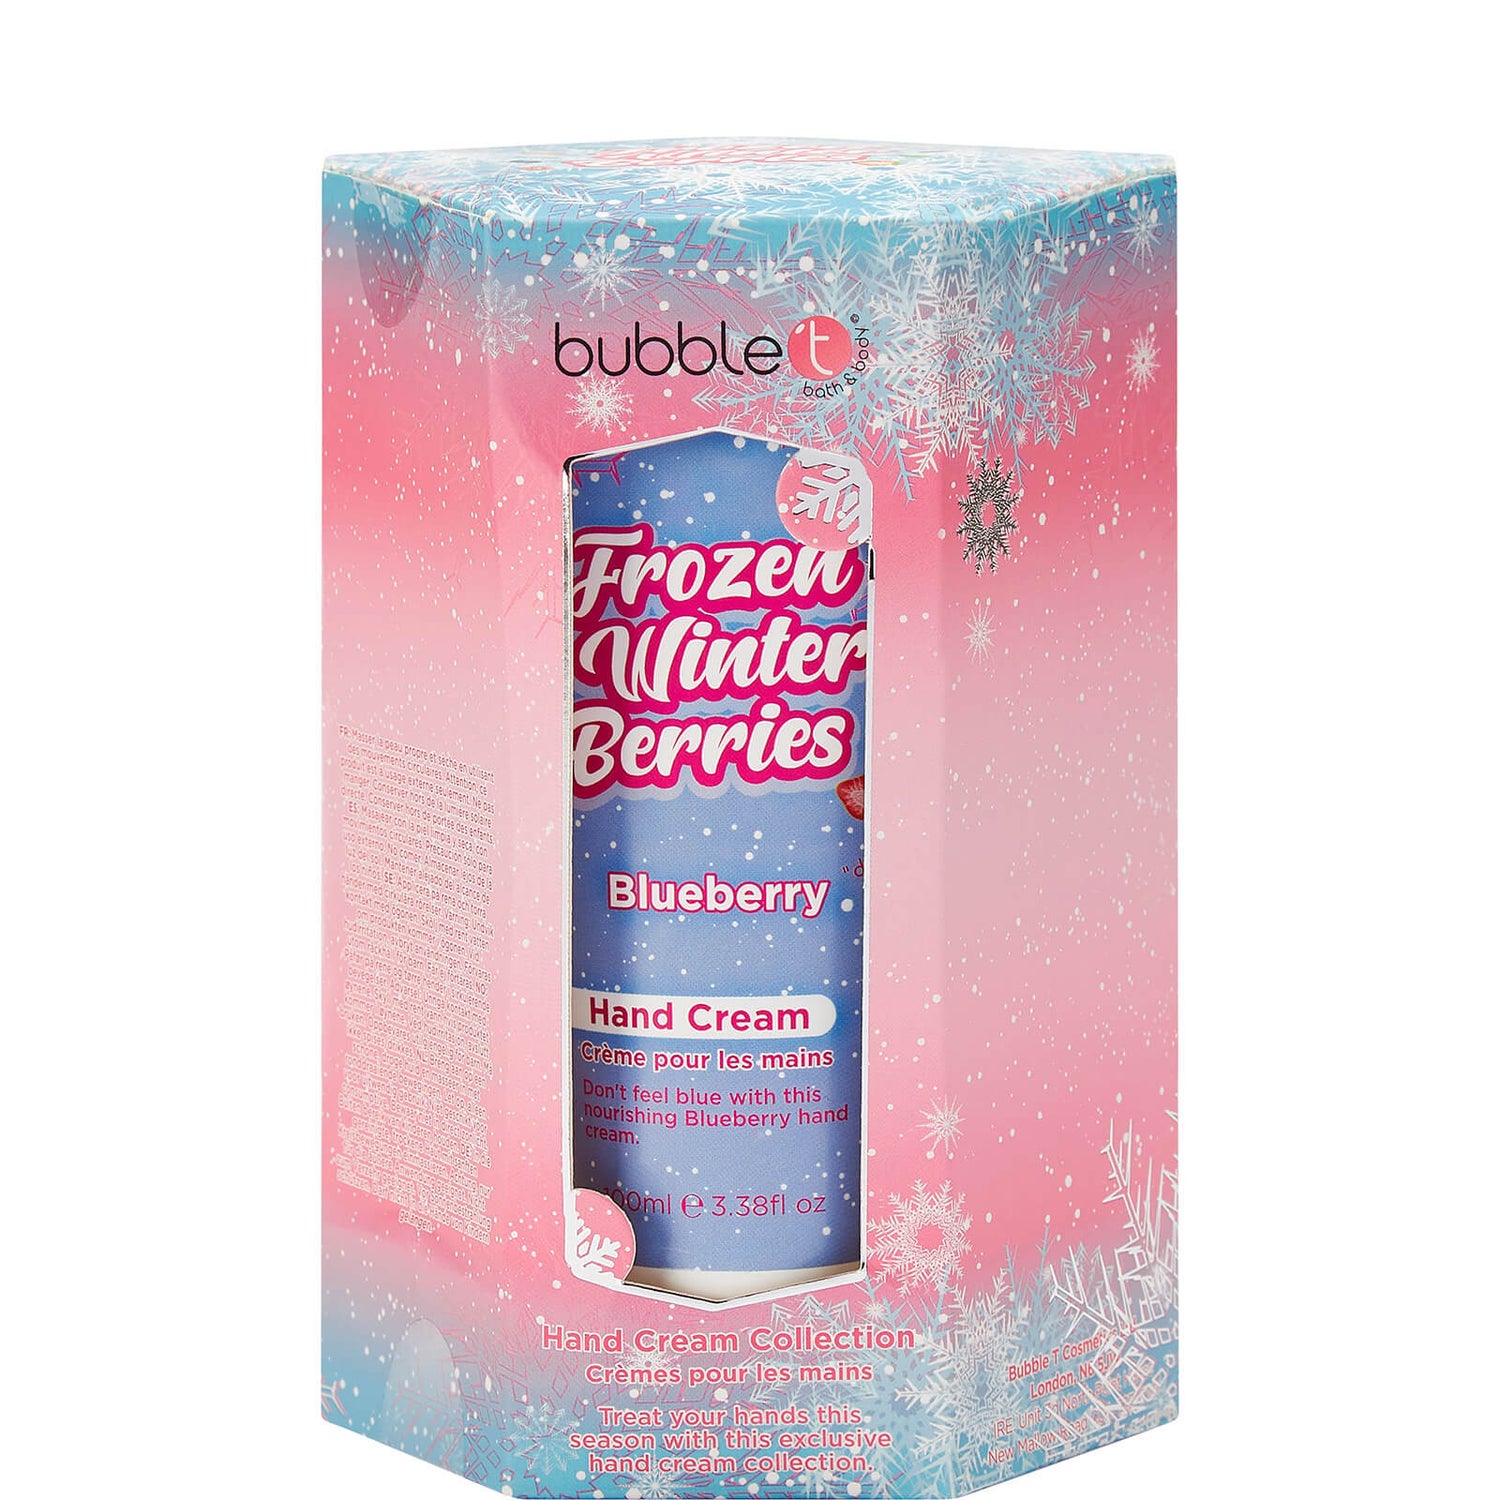 Trio Frozen Winter Berries Hand Cream Bubble T Cosmetics